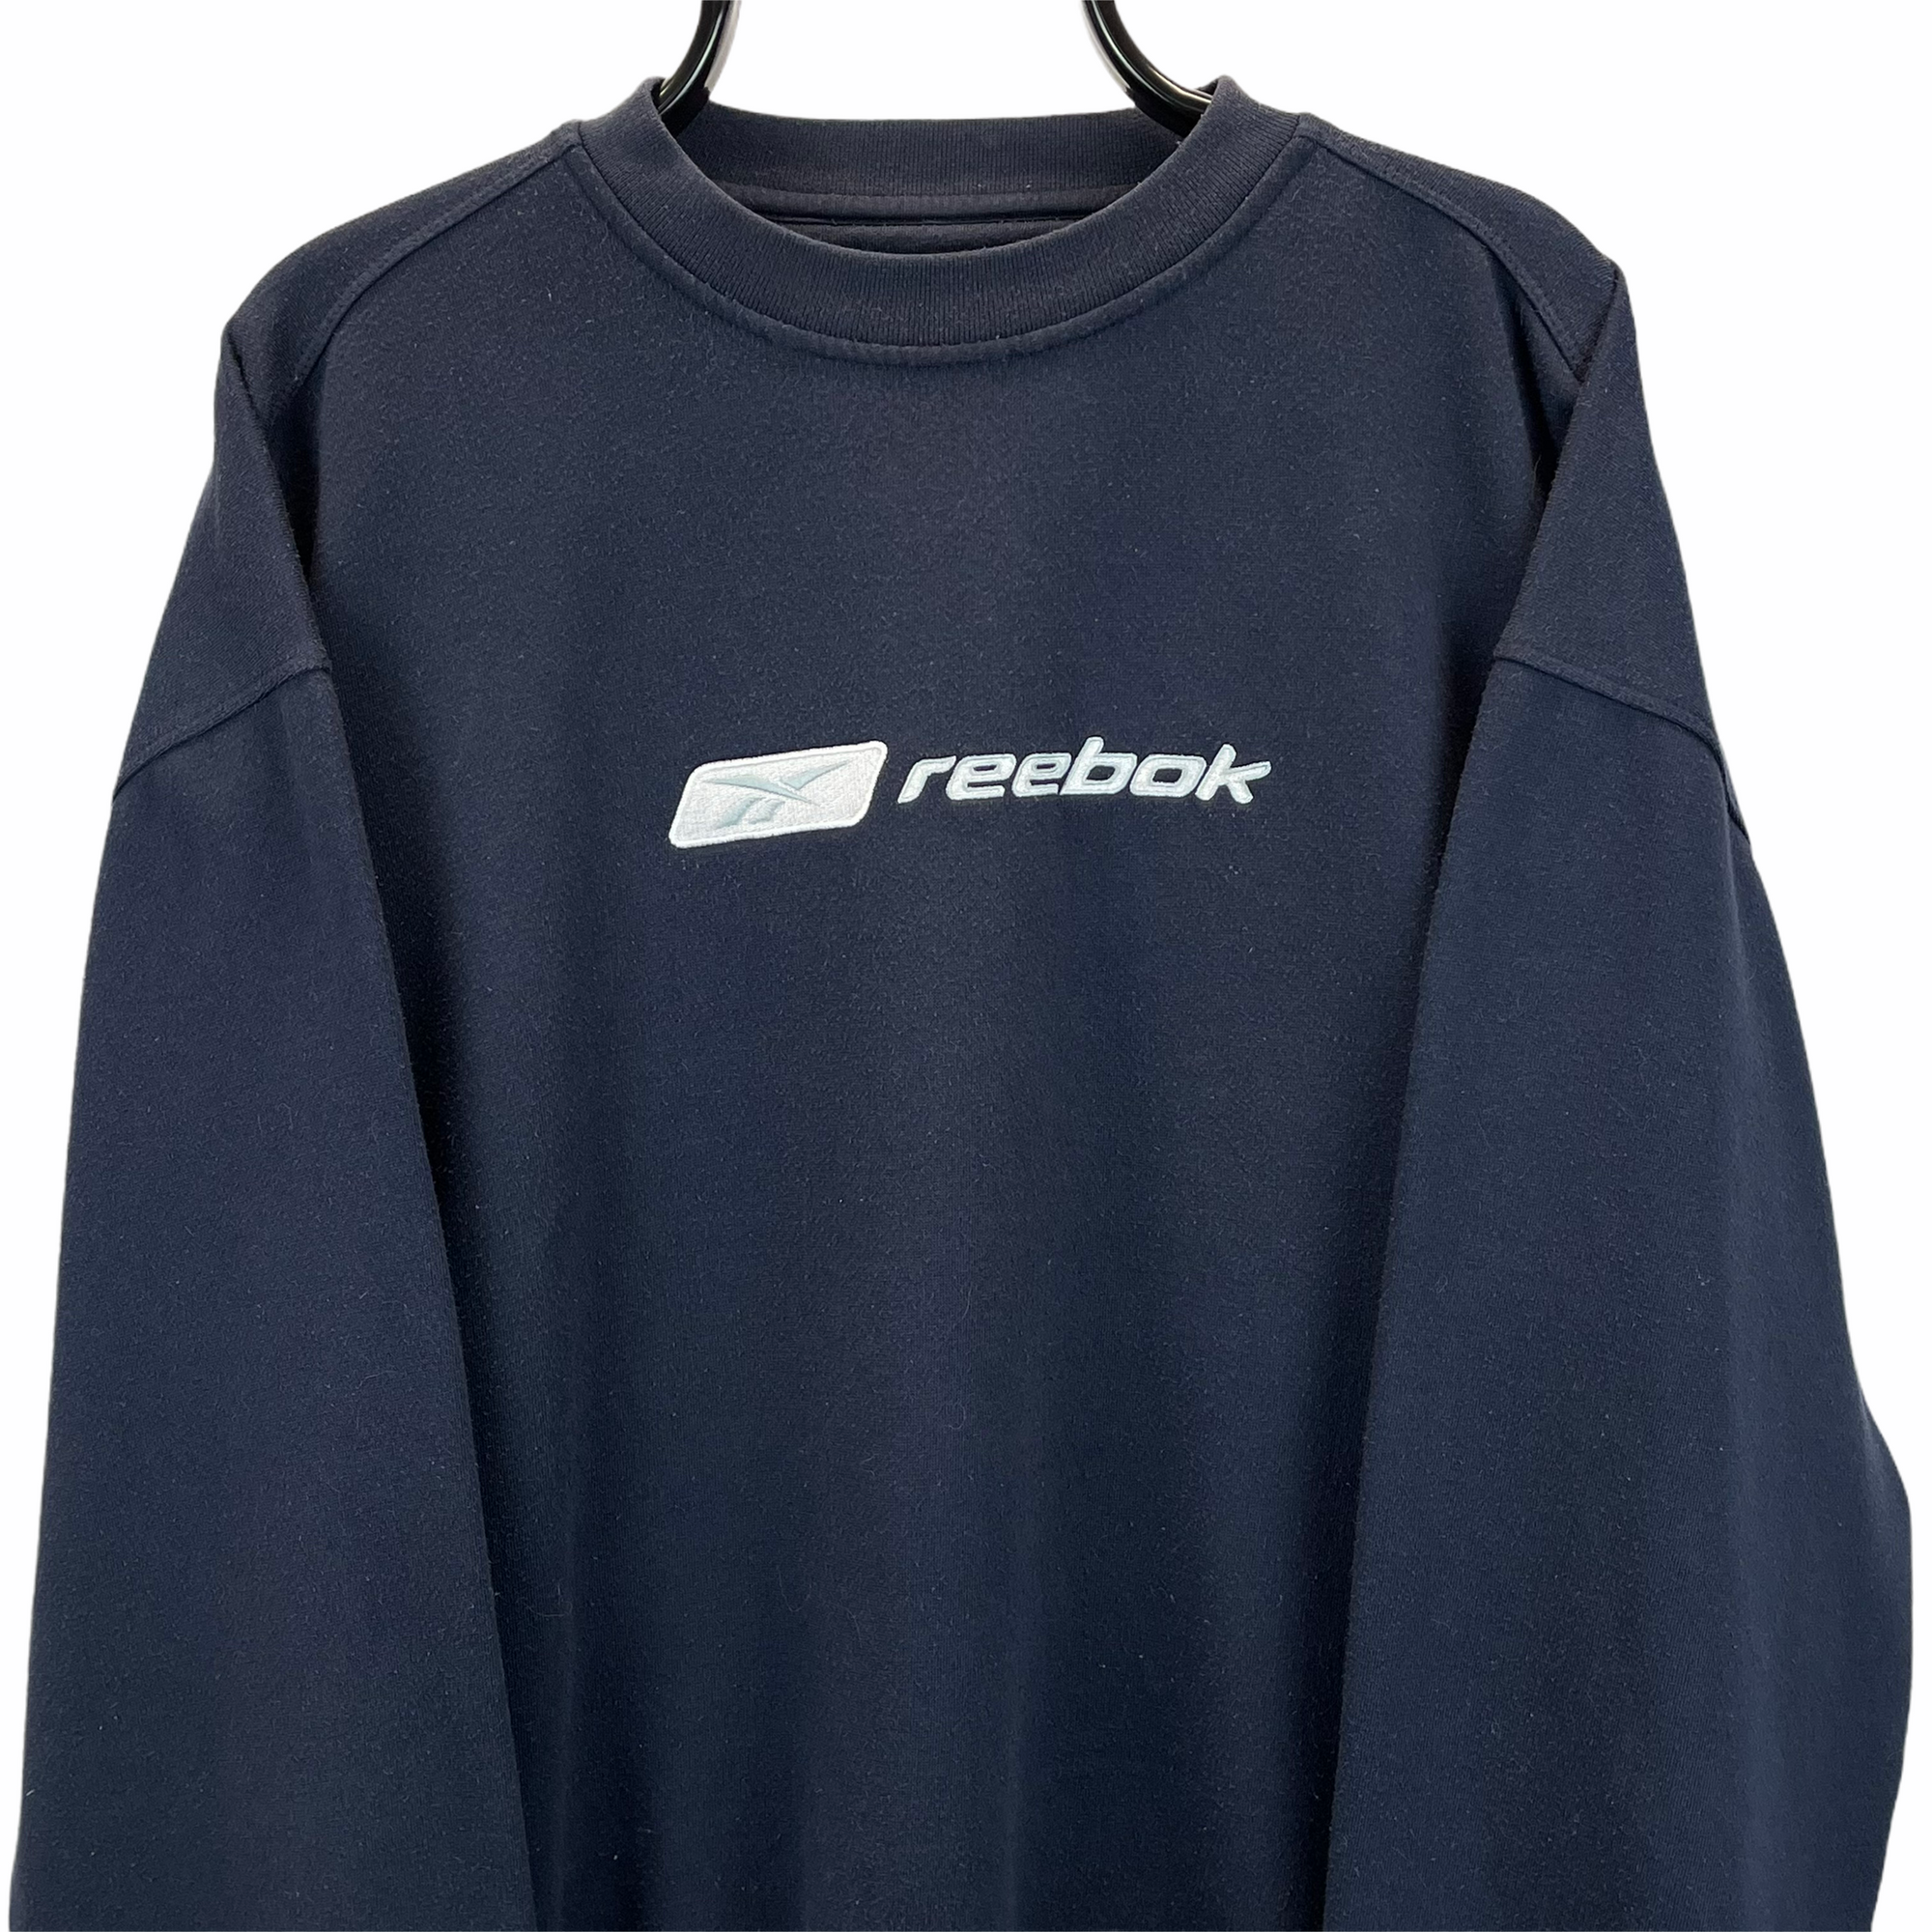 Vintage 90s Reebok Spellout Sweatshirt in Navy - Men's XL/Women's XXL